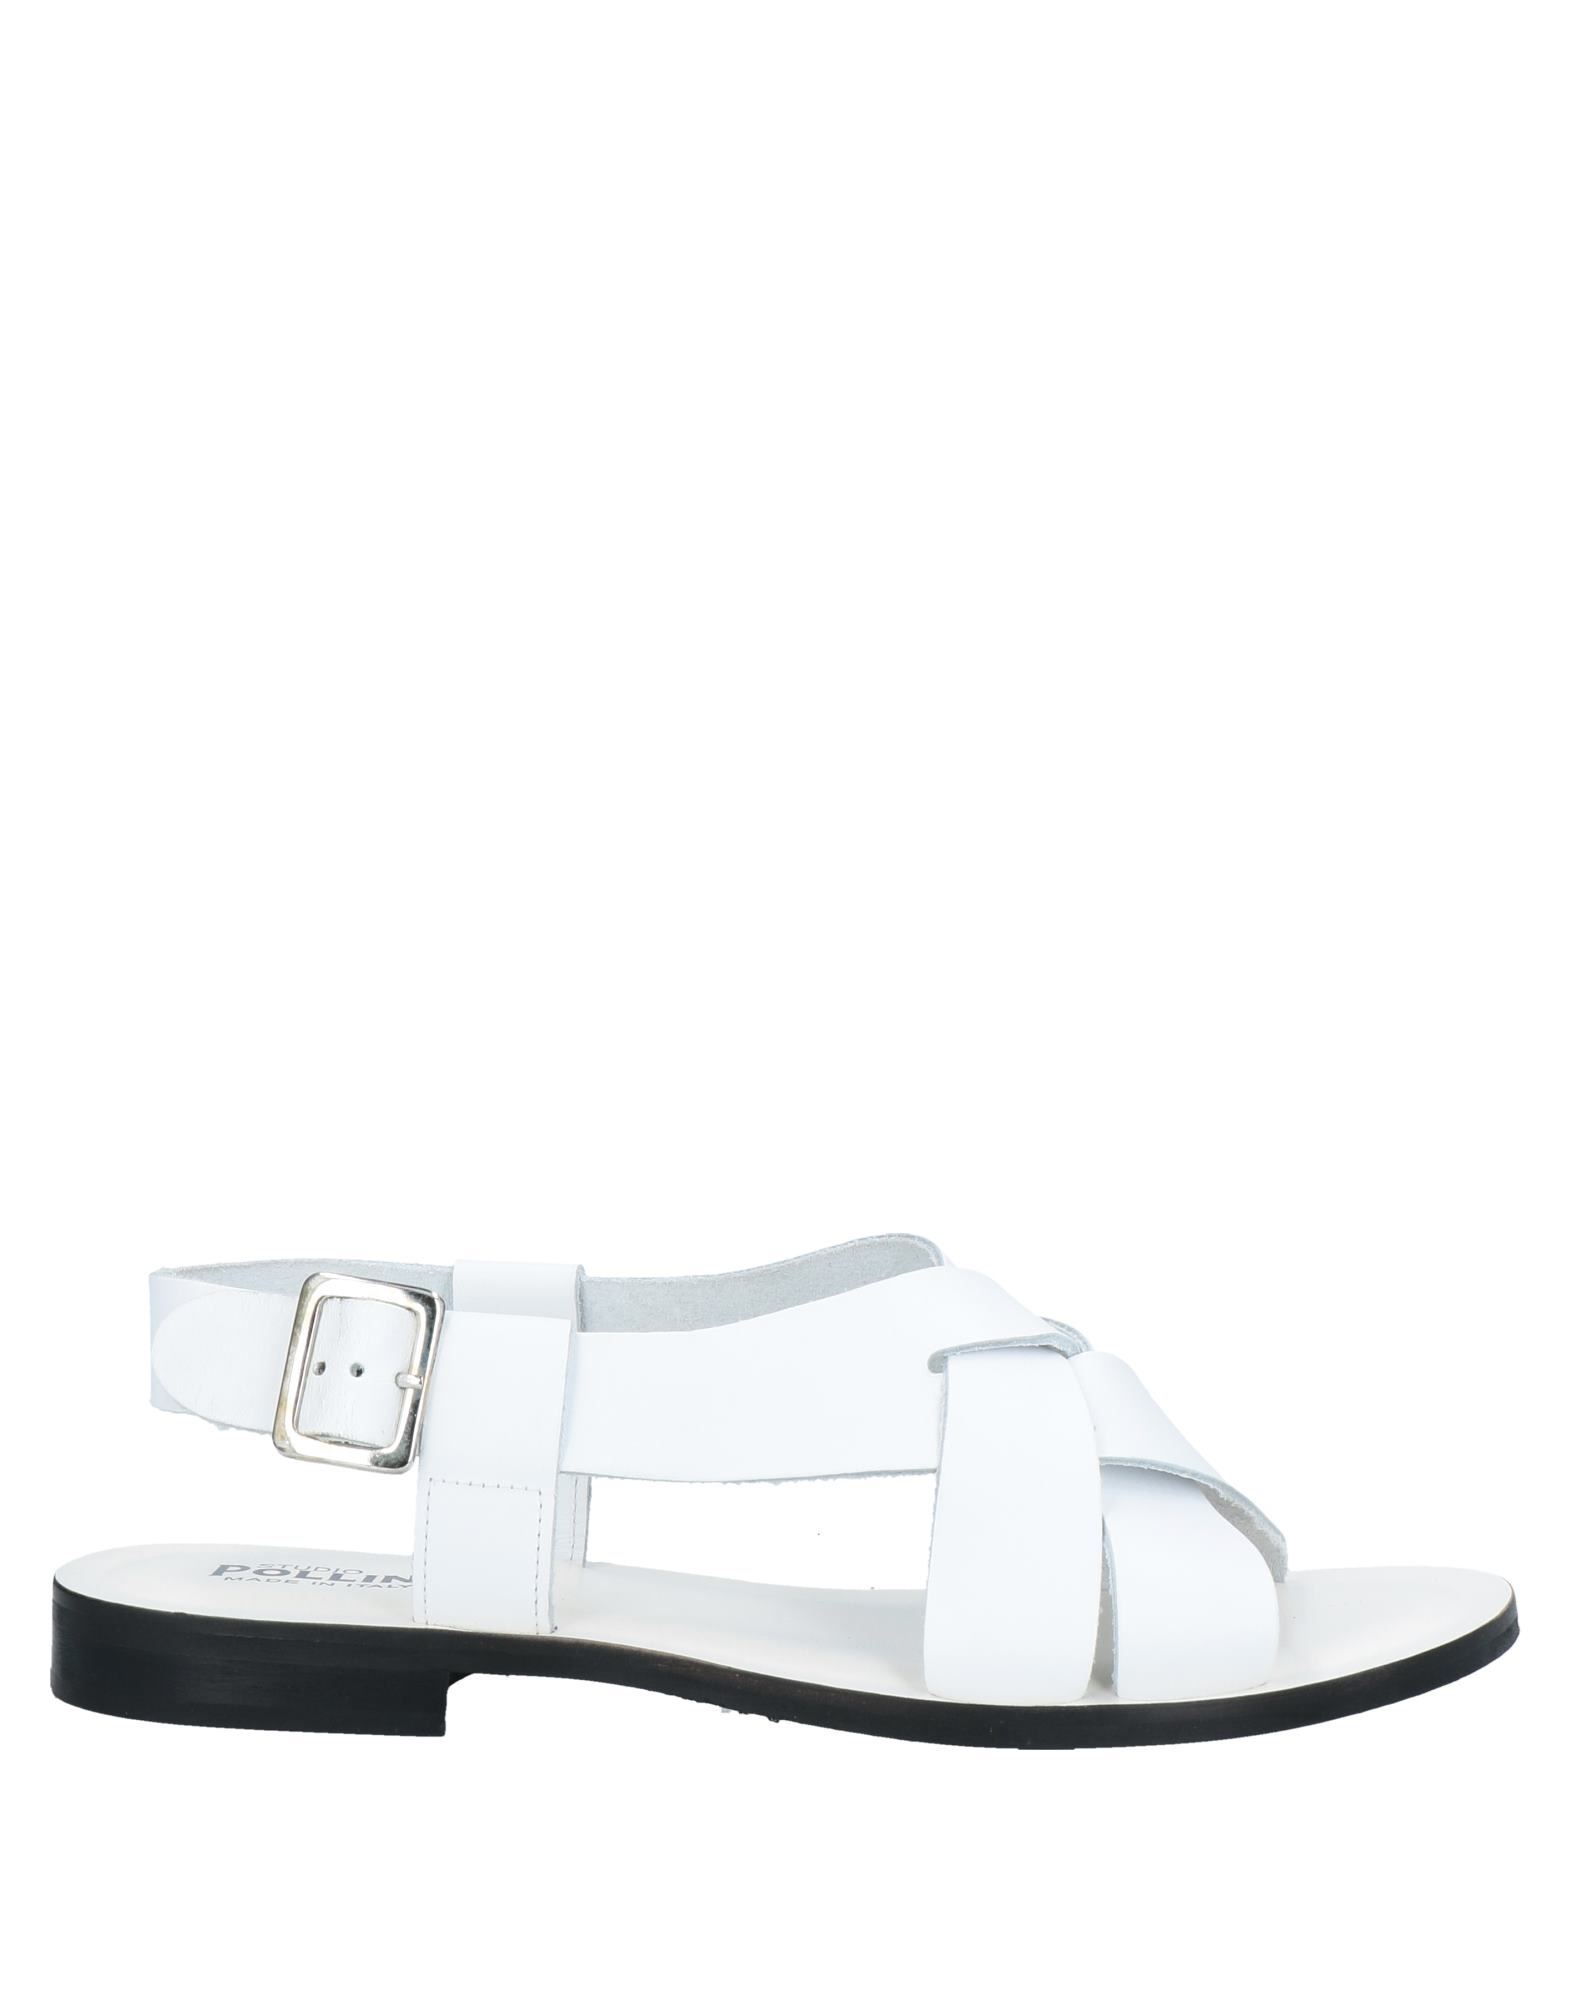 Studio Pollini Sandals In White